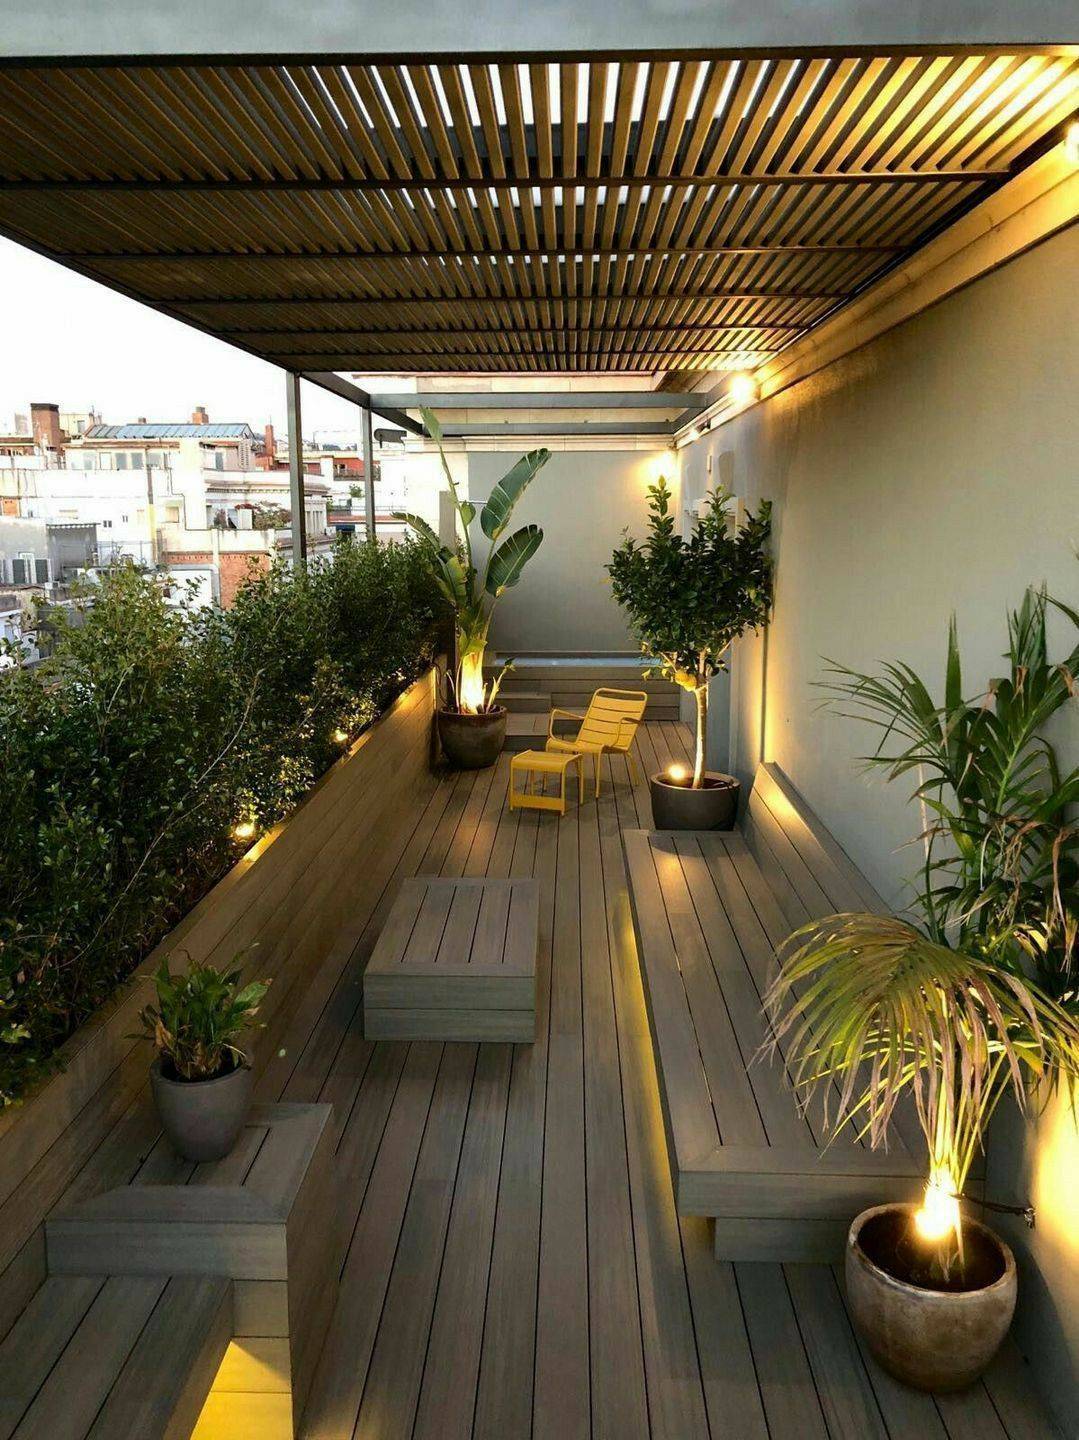 Plant Terrace Landscape Decoration Methods Small Design Ideas